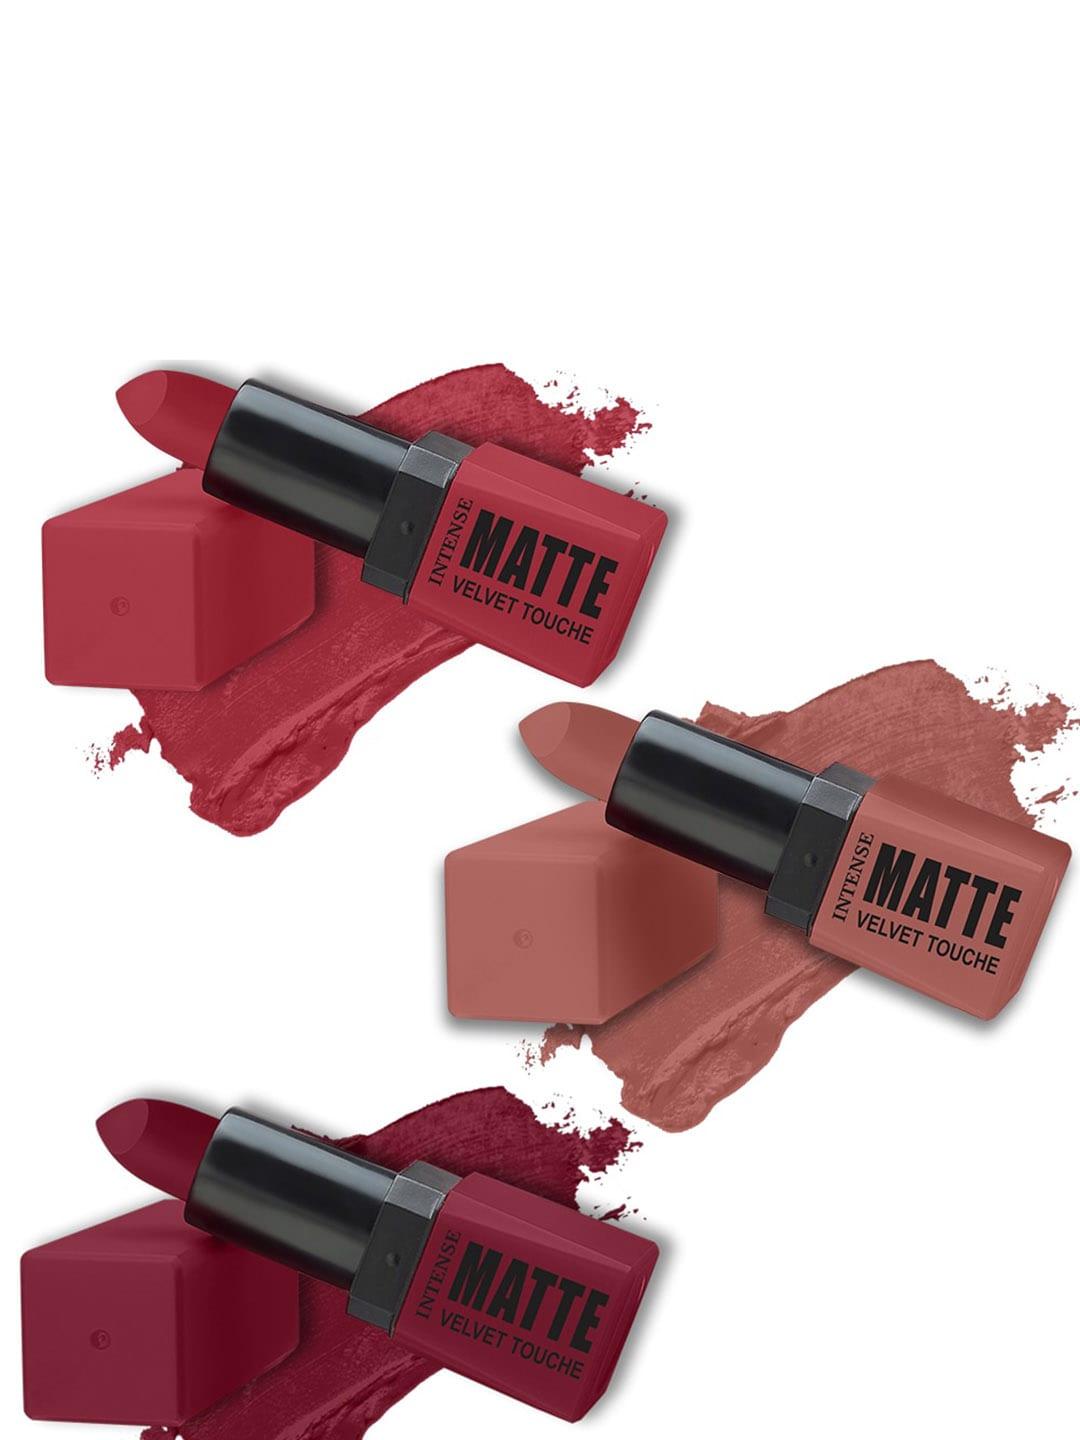 ForSure Set of 3 Intense Matte Velvet Touche Lipsticks 3.5g Each - Shade 304, 306, 303